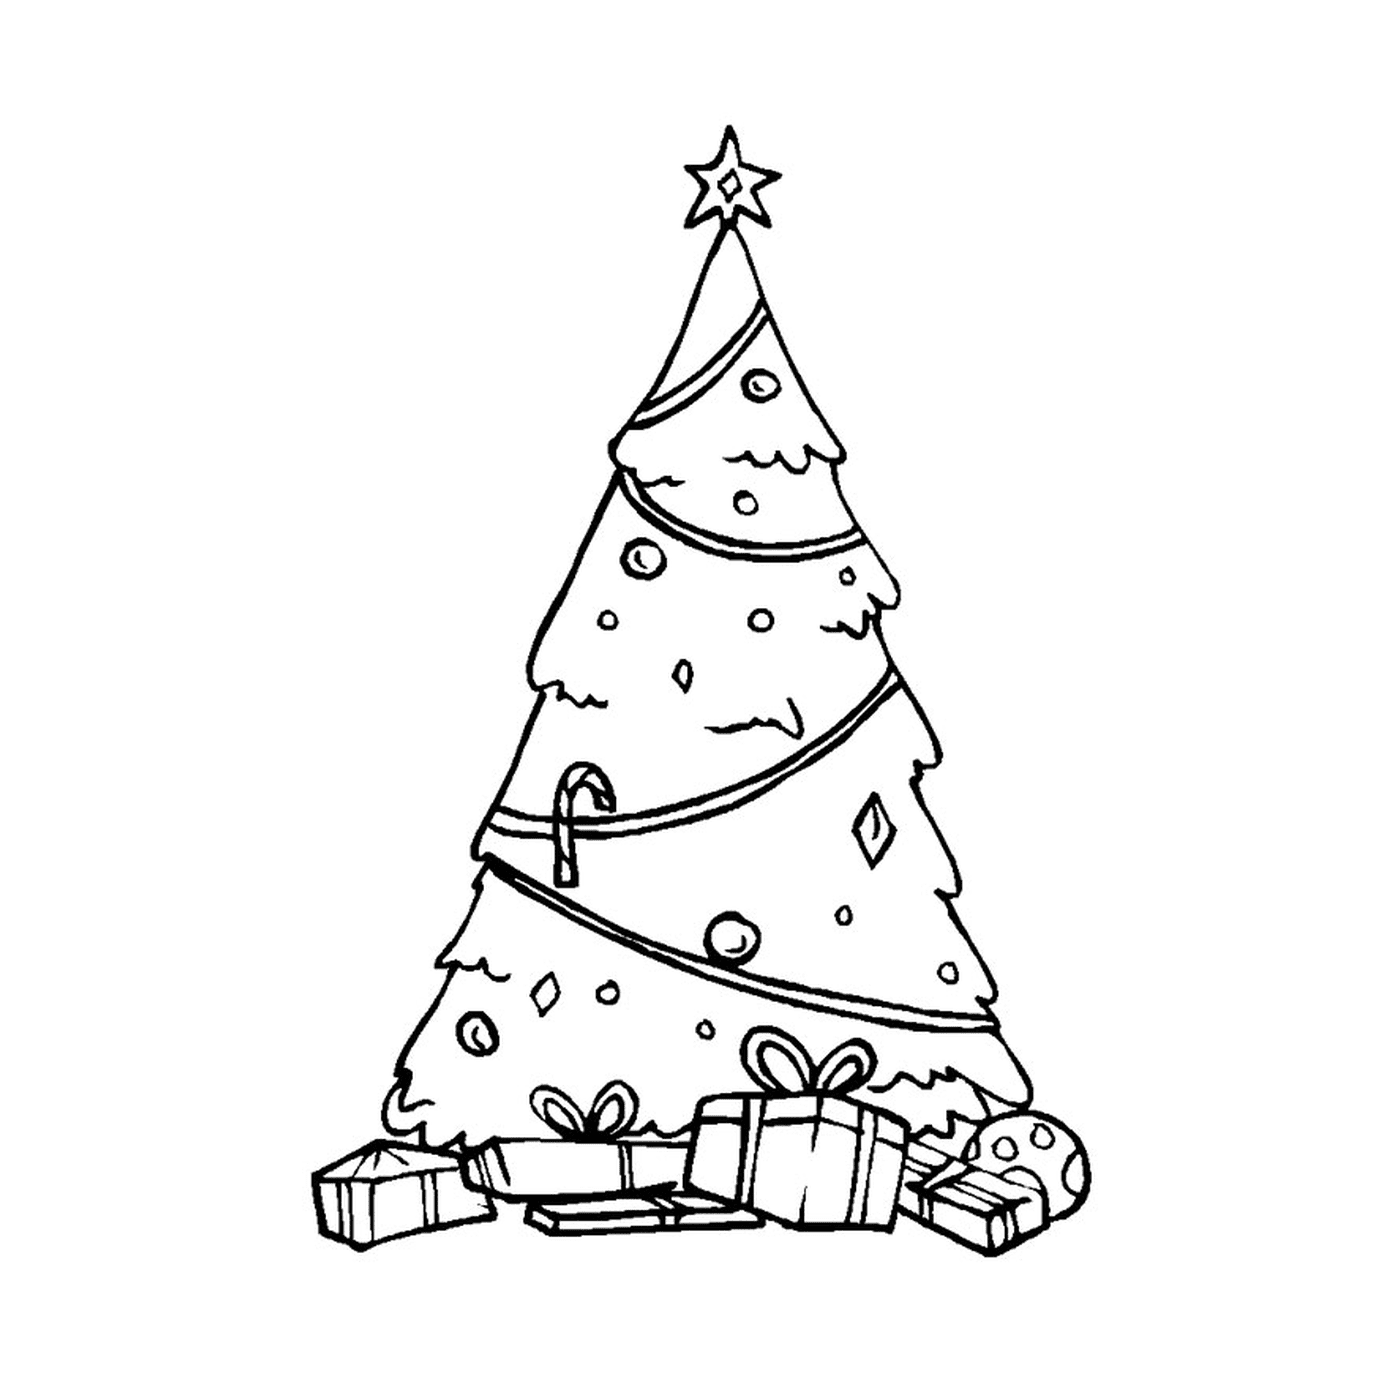  شجرة عيد الميلاد الأساسية 